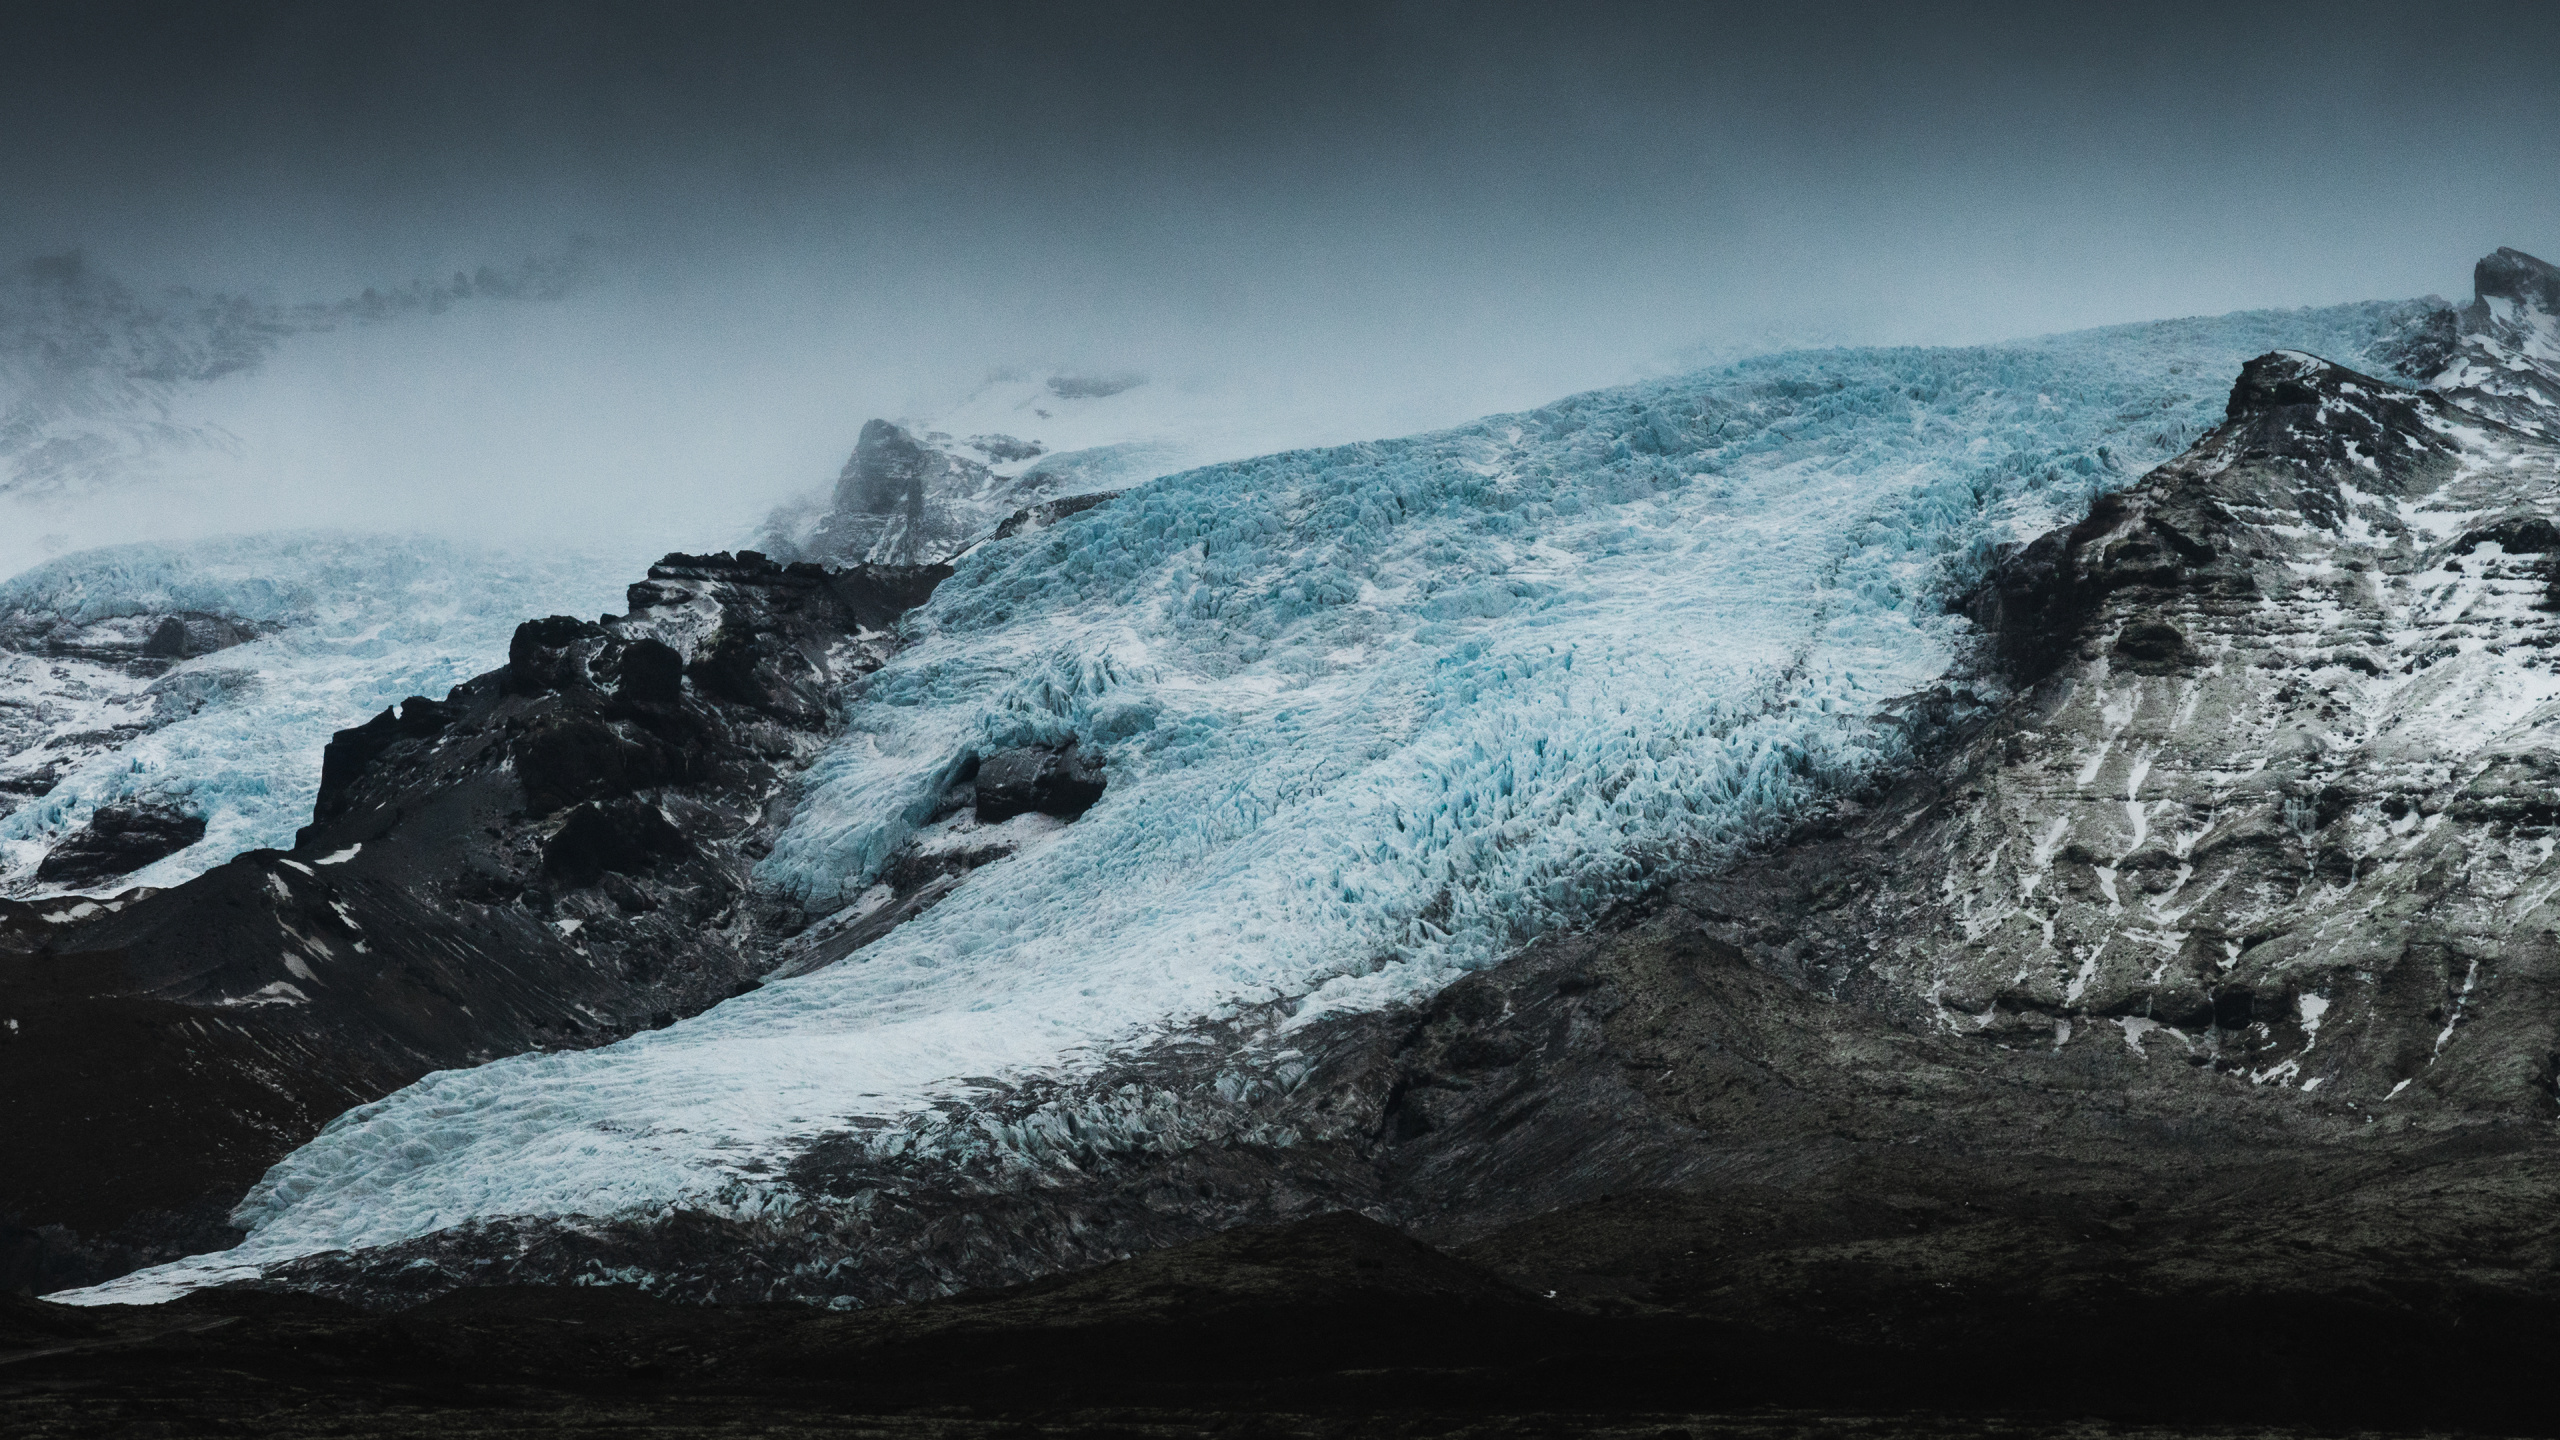 冰川, 性质, 安装的风景, 多山的地貌, 自然景观 壁纸 2560x1440 允许